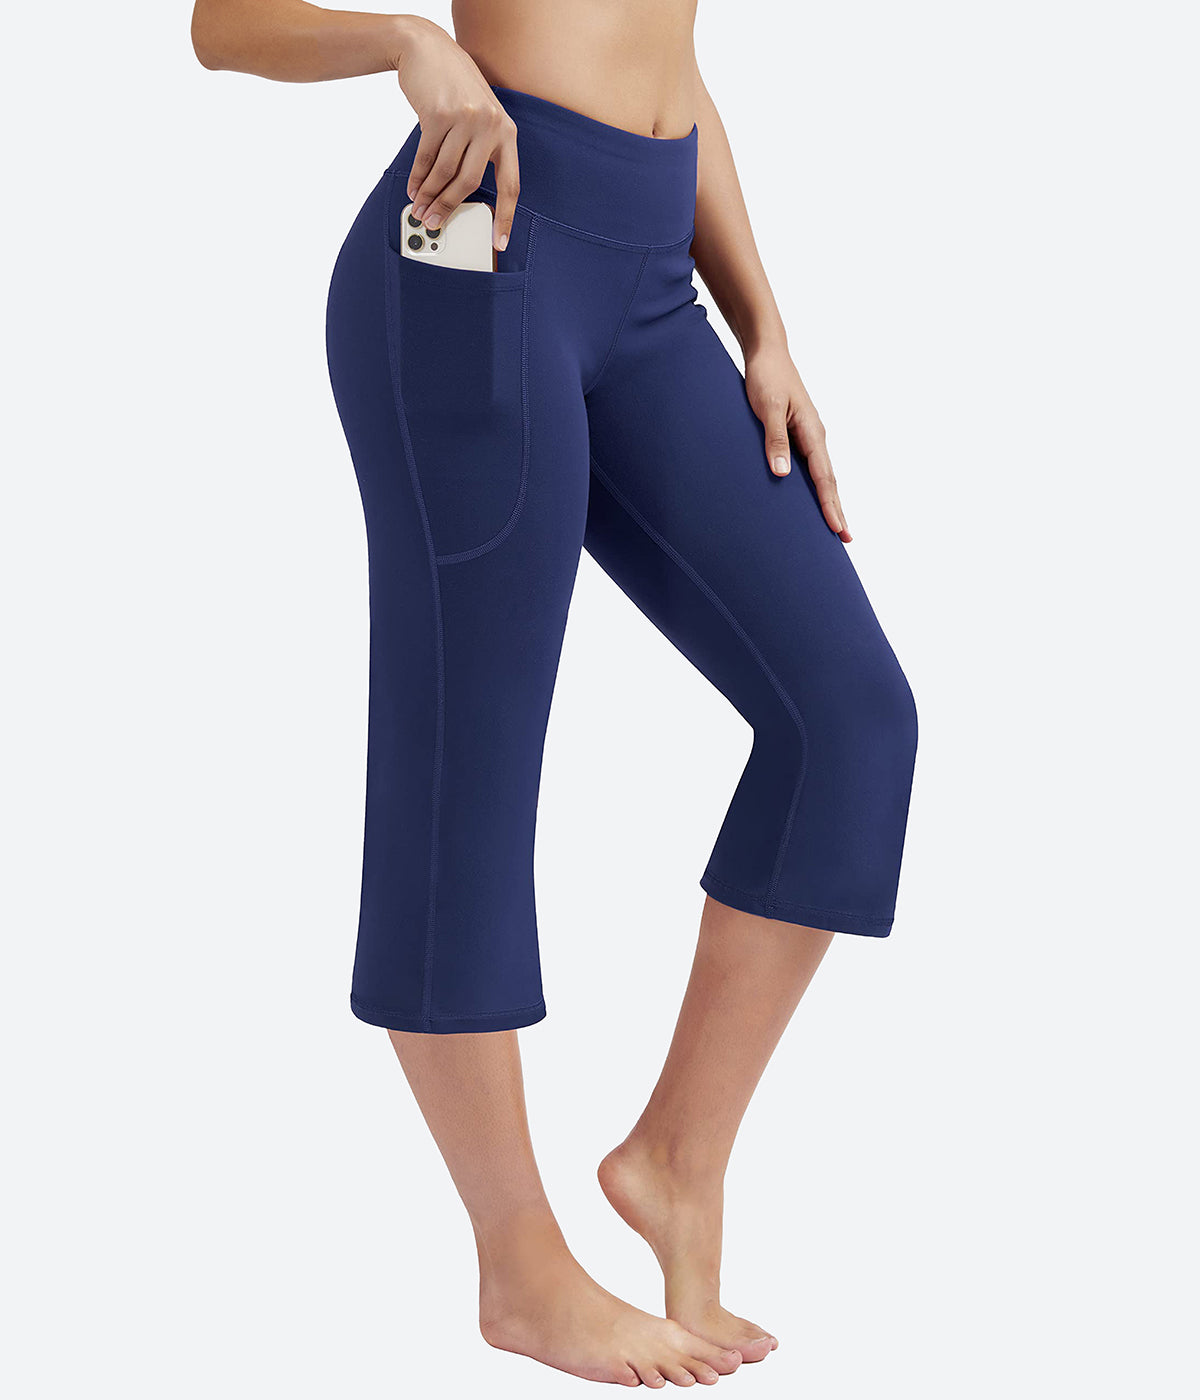 Bblulu Womens Capri Yoga Pants with Pockets High Waisted